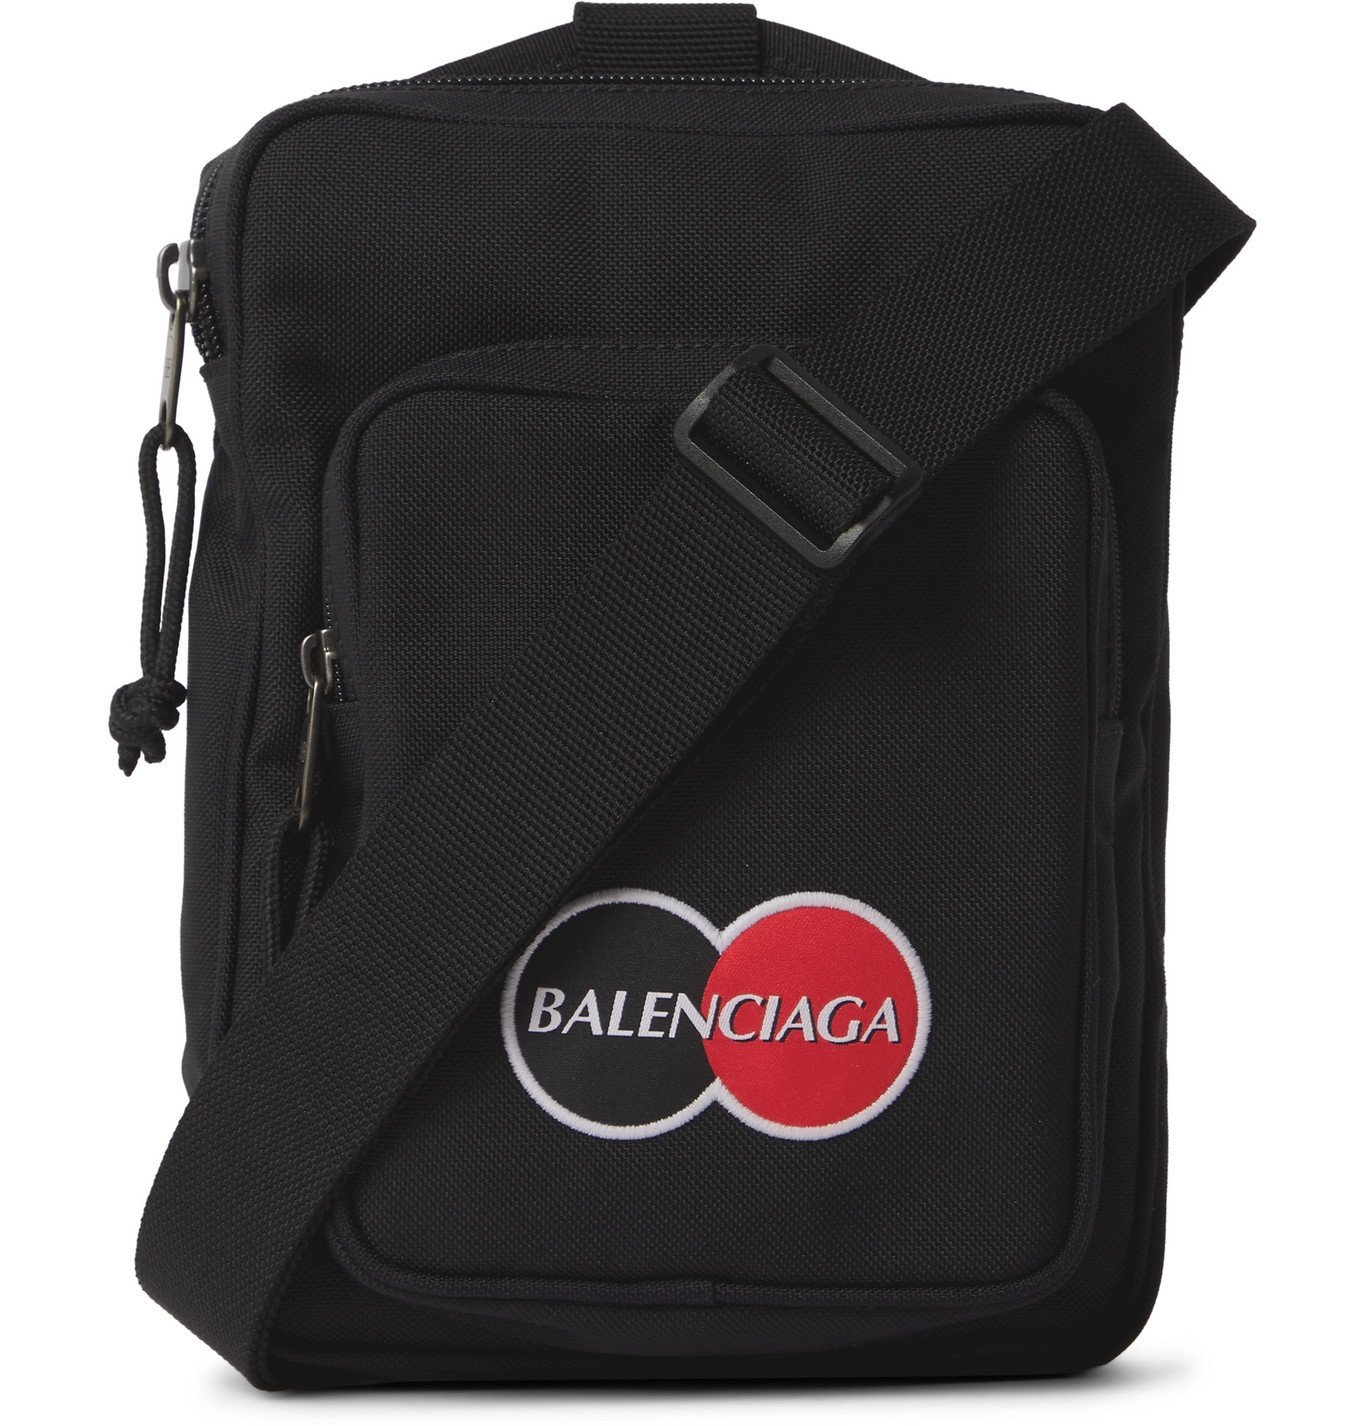 Balenciaga - Logo-Appliquéd Canvas Messenger Bag - Black Balenciaga